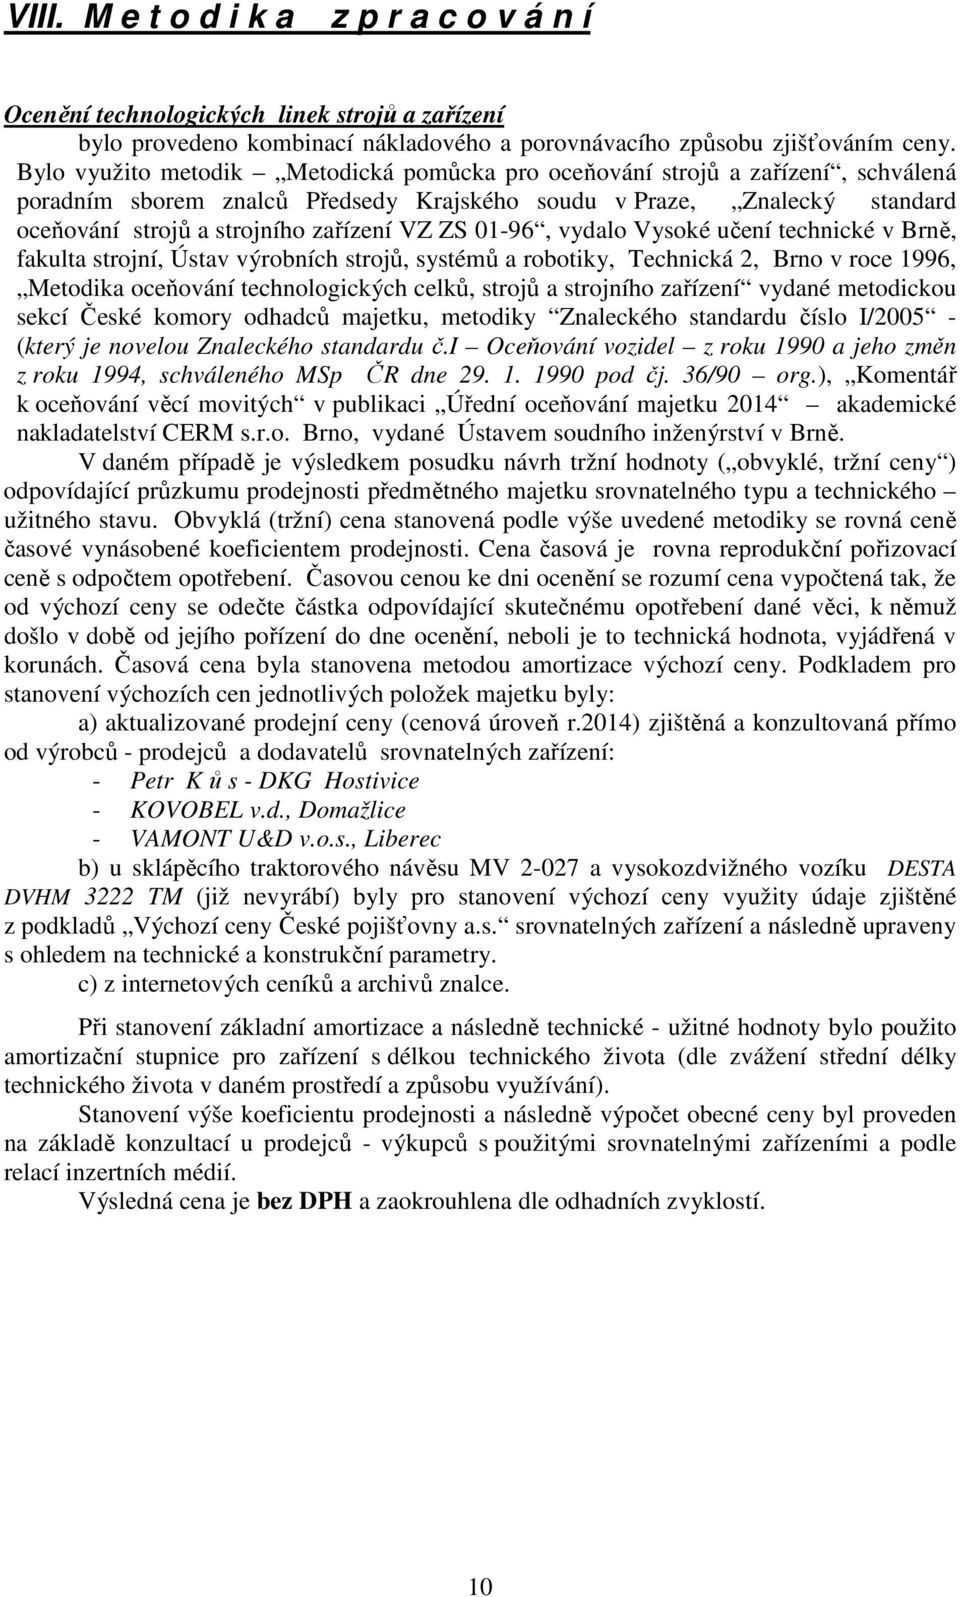 ZS 01-96, vydalo Vysoké učení technické v Brně, fakulta strojní, Ústav výrobních strojů, systémů a robotiky, Technická 2, Brno v roce 1996, Metodika oceňování technologických celků, strojů a